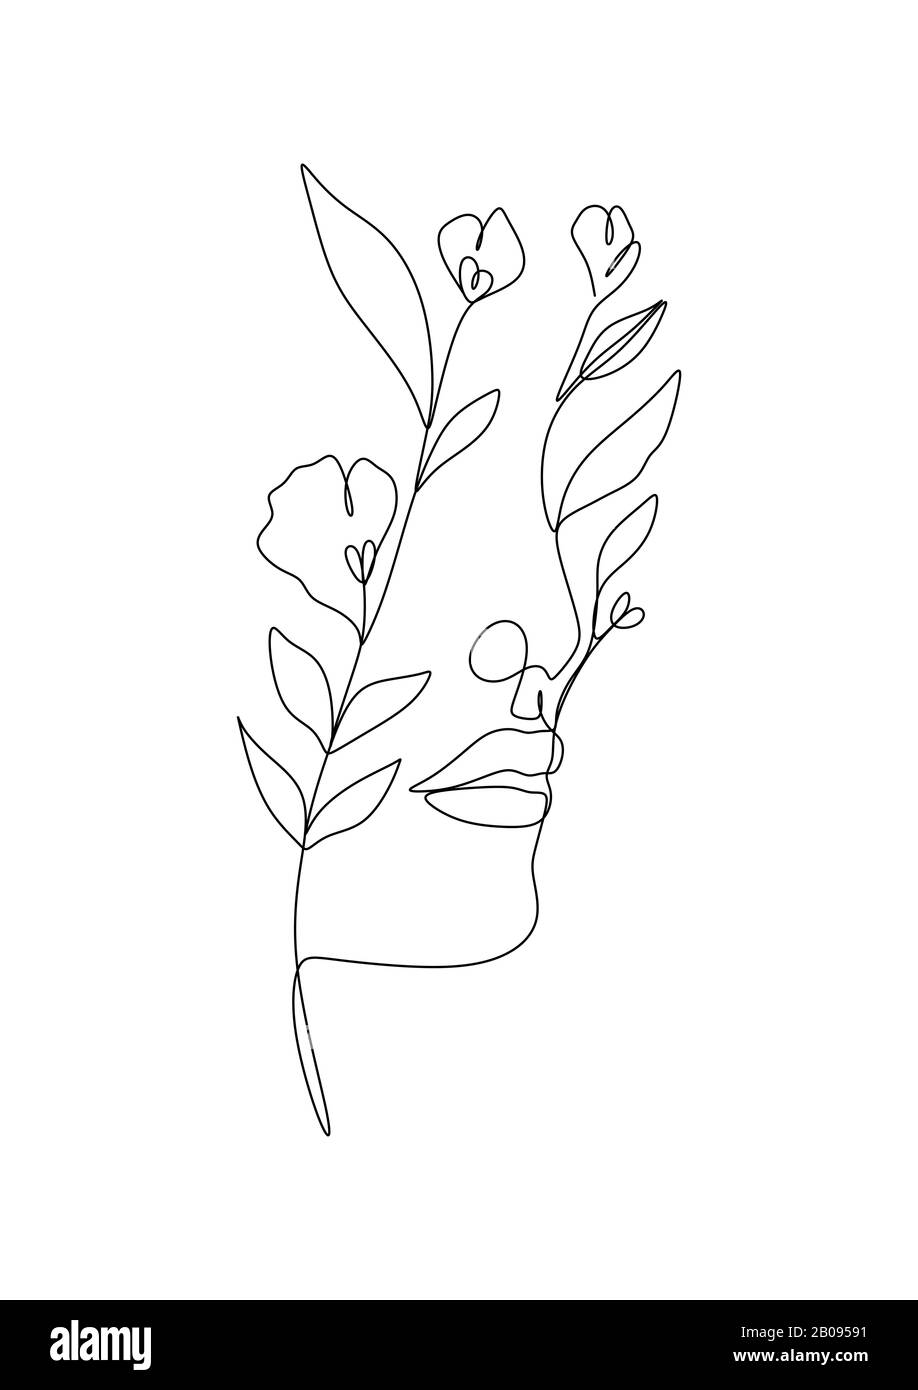 Zeichnung der natürlichen Linie der Frau. Mädchen mit Blättern Vektor. Natur Speichern. Erdtag. Abstraktes Gesicht mit Blumen in einer Linienvektorzeichnung. Minimalistisches Porträt Stockfoto